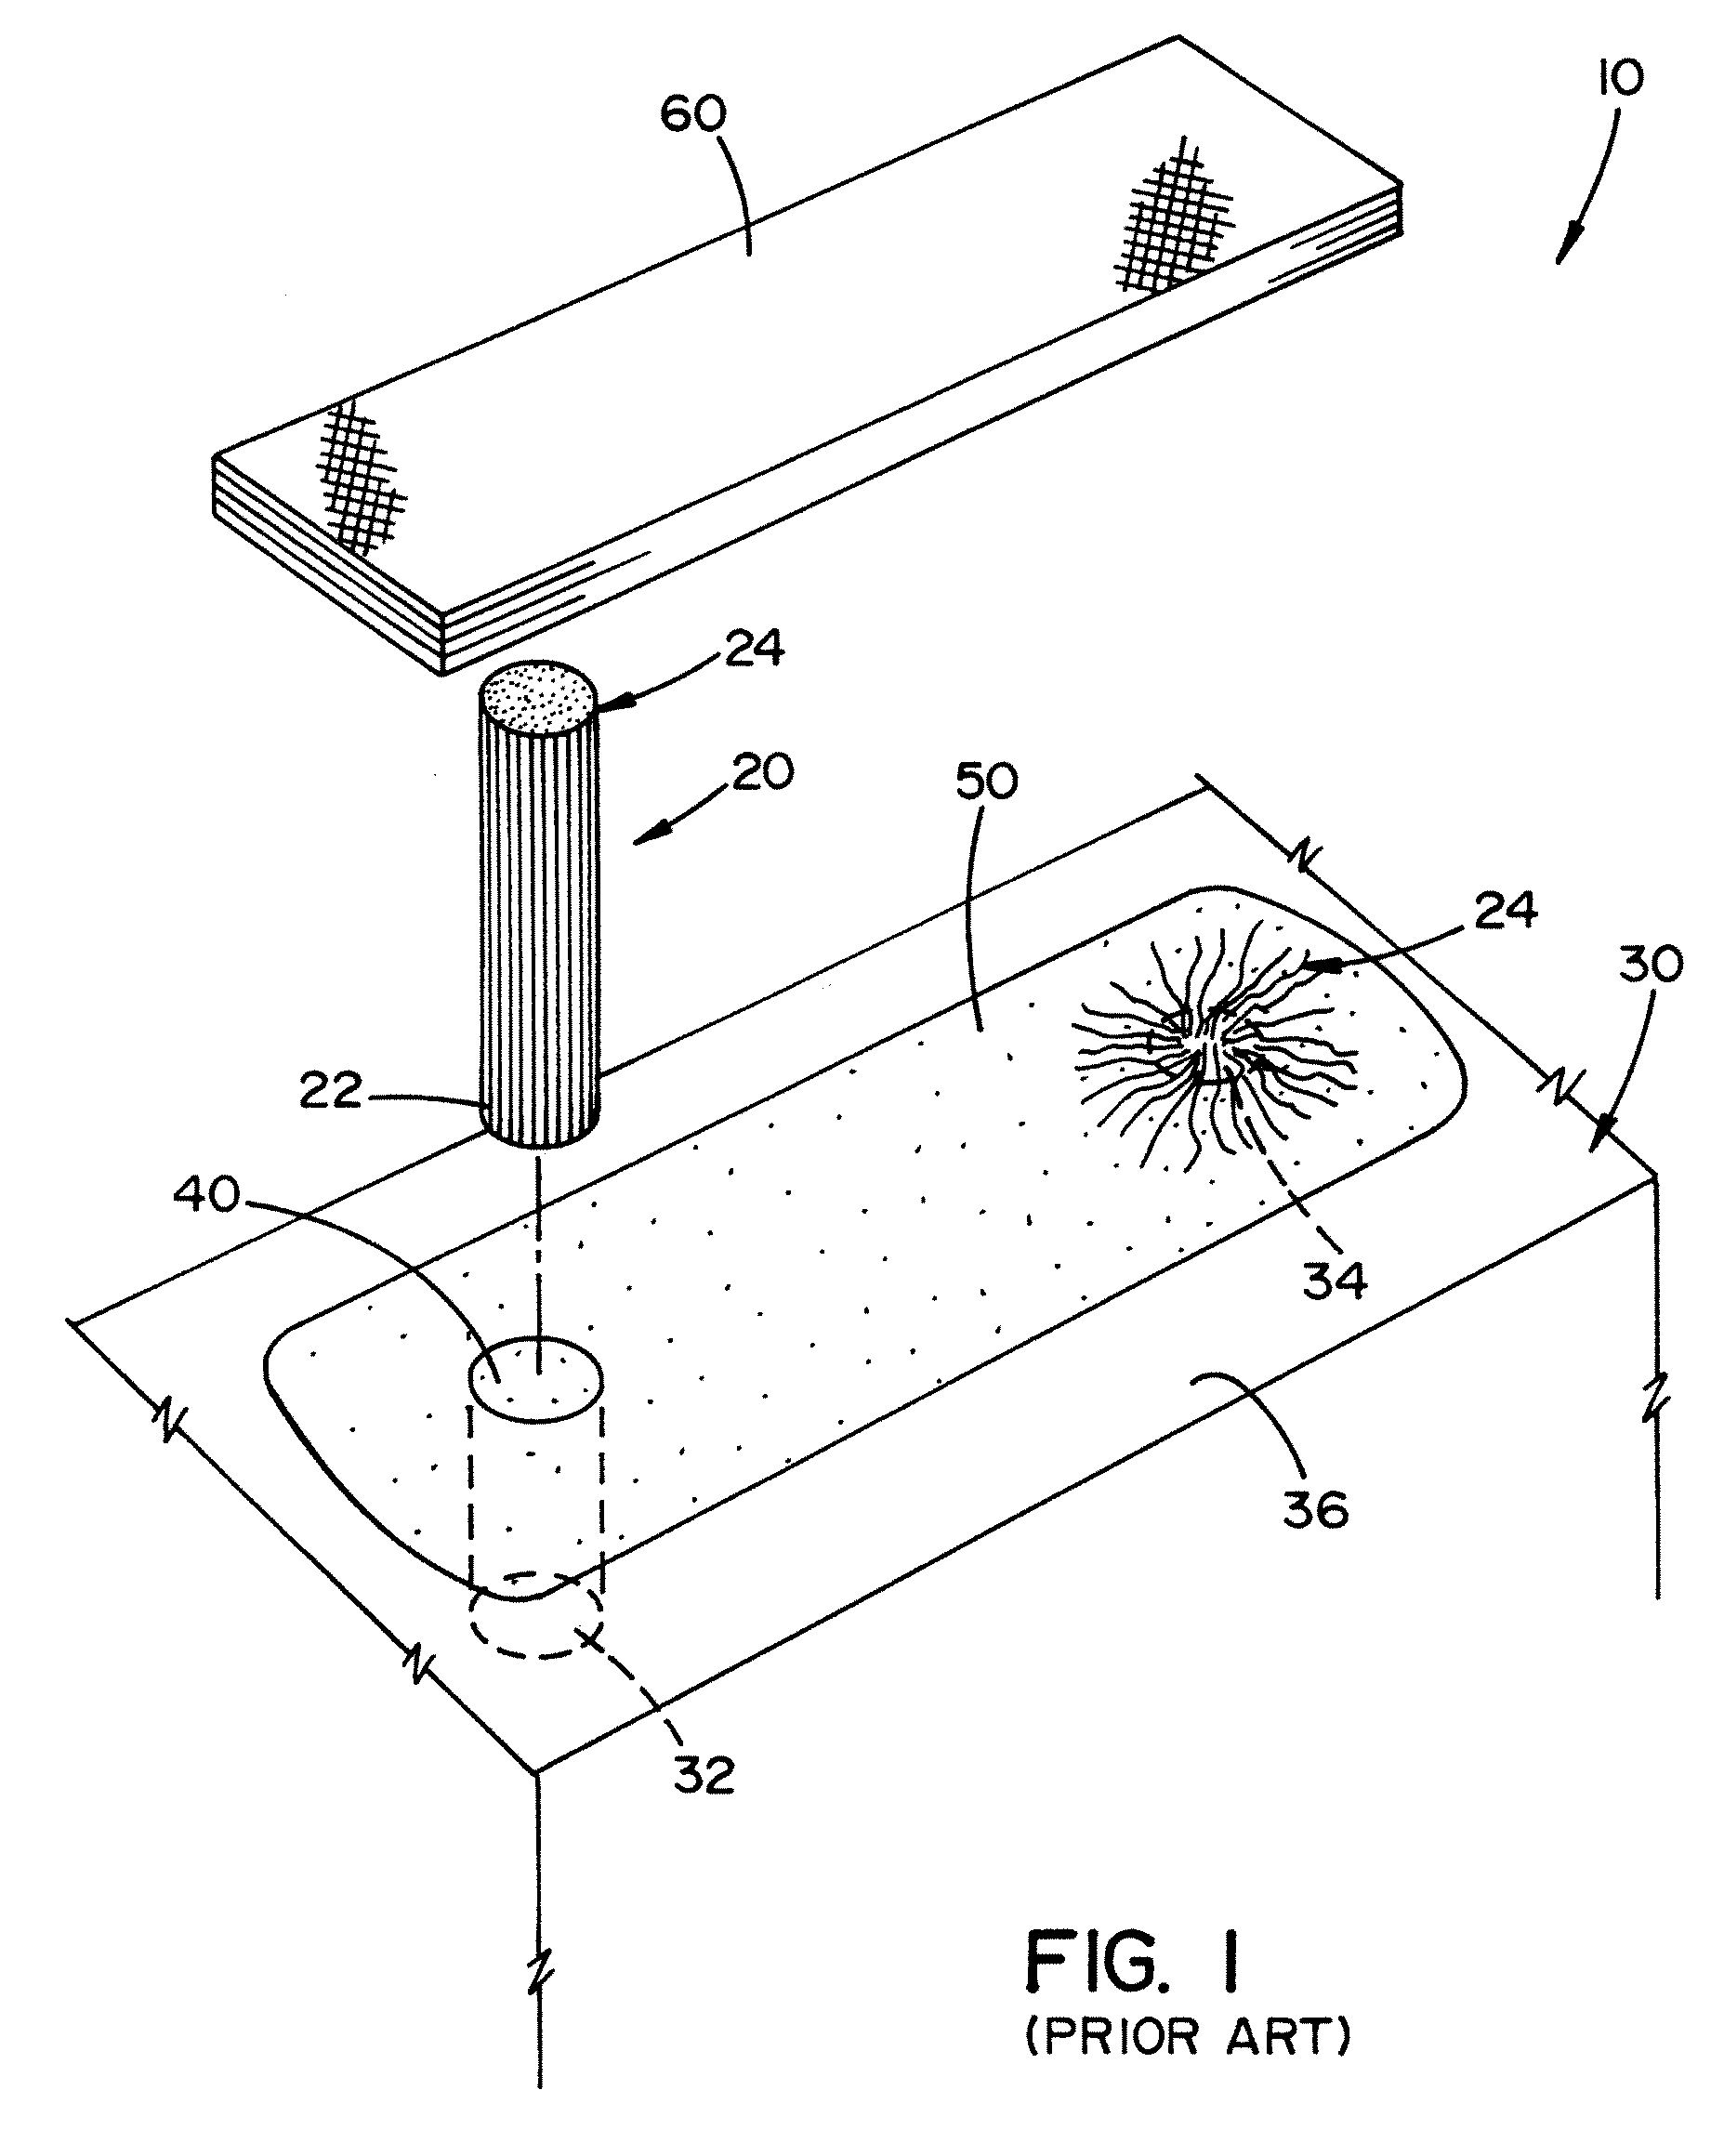 Method and apparatus for repairing concrete